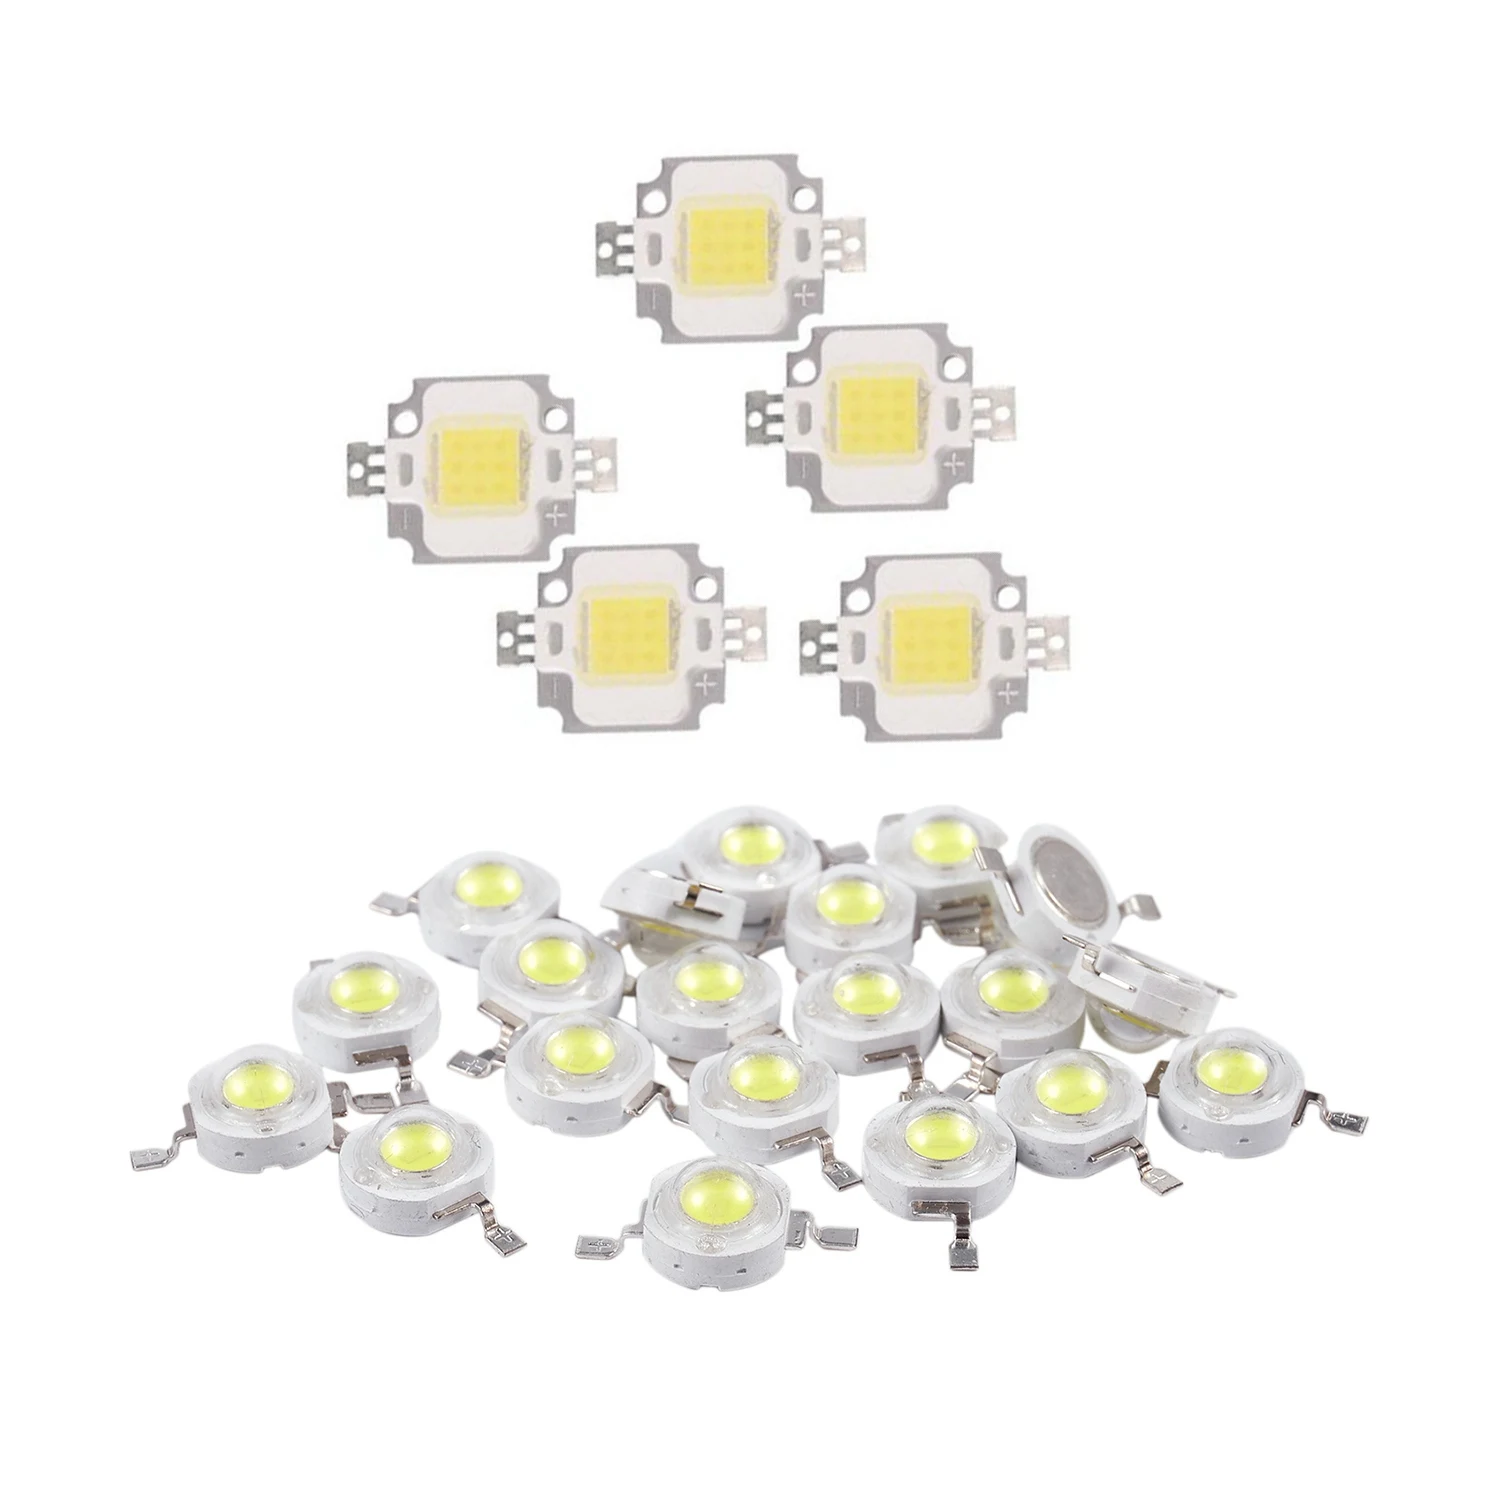 

25 Pcs White Light Led Module: 5 Pcs Led Lamp Bulb 10W 20000K 900Lm & 20 Pcs 2 Pin 3W LED Bead Emitters 170-190Lm 6000K